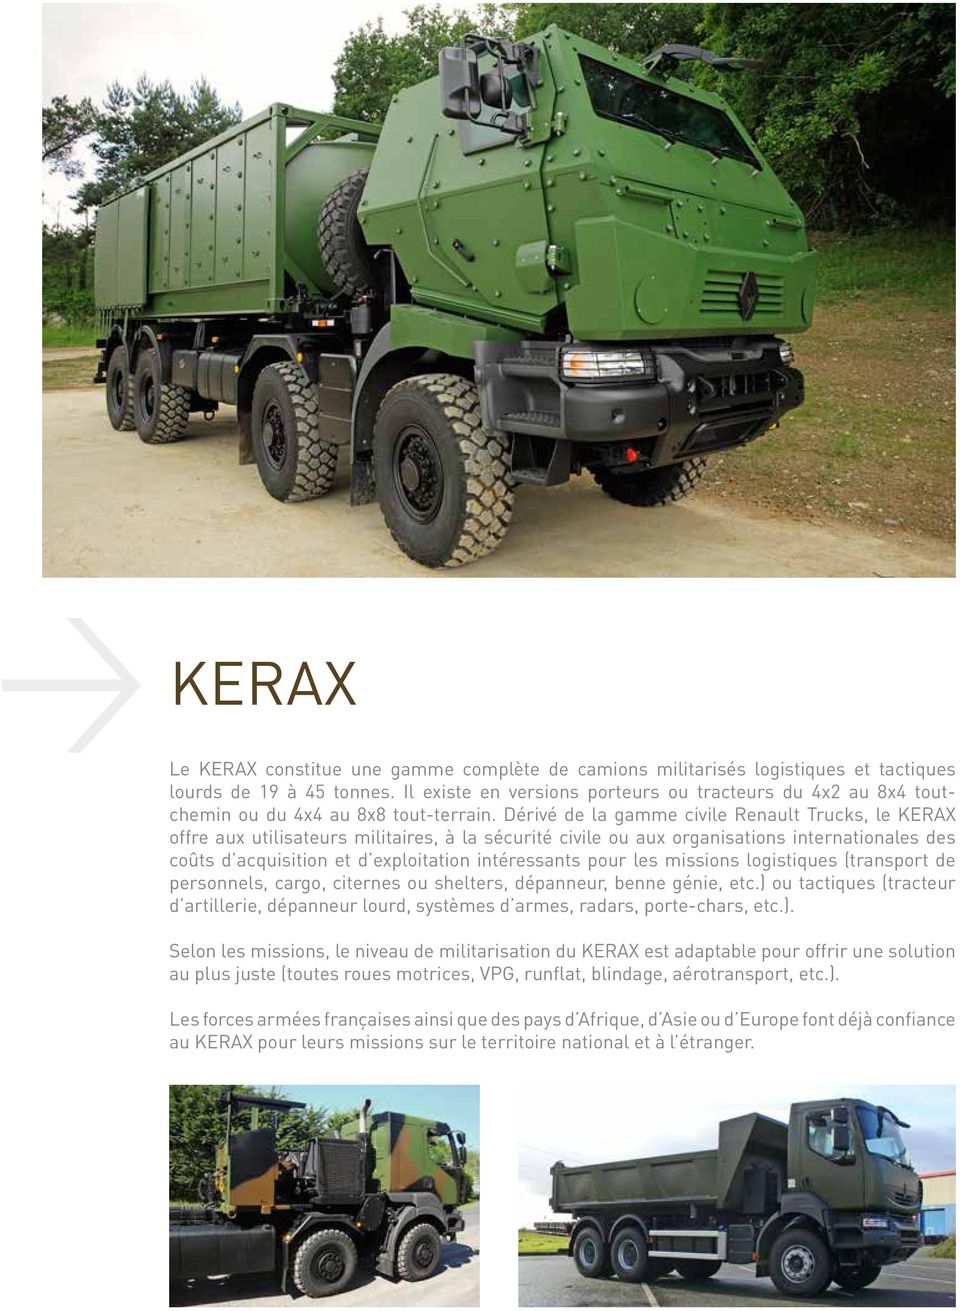 Dérivé de la gamme civile Renault Trucks, le KERAX offre aux utilisateurs militaires, à la sécurité civile ou aux organisations internationales des coûts d acquisition et d exploitation intéressants